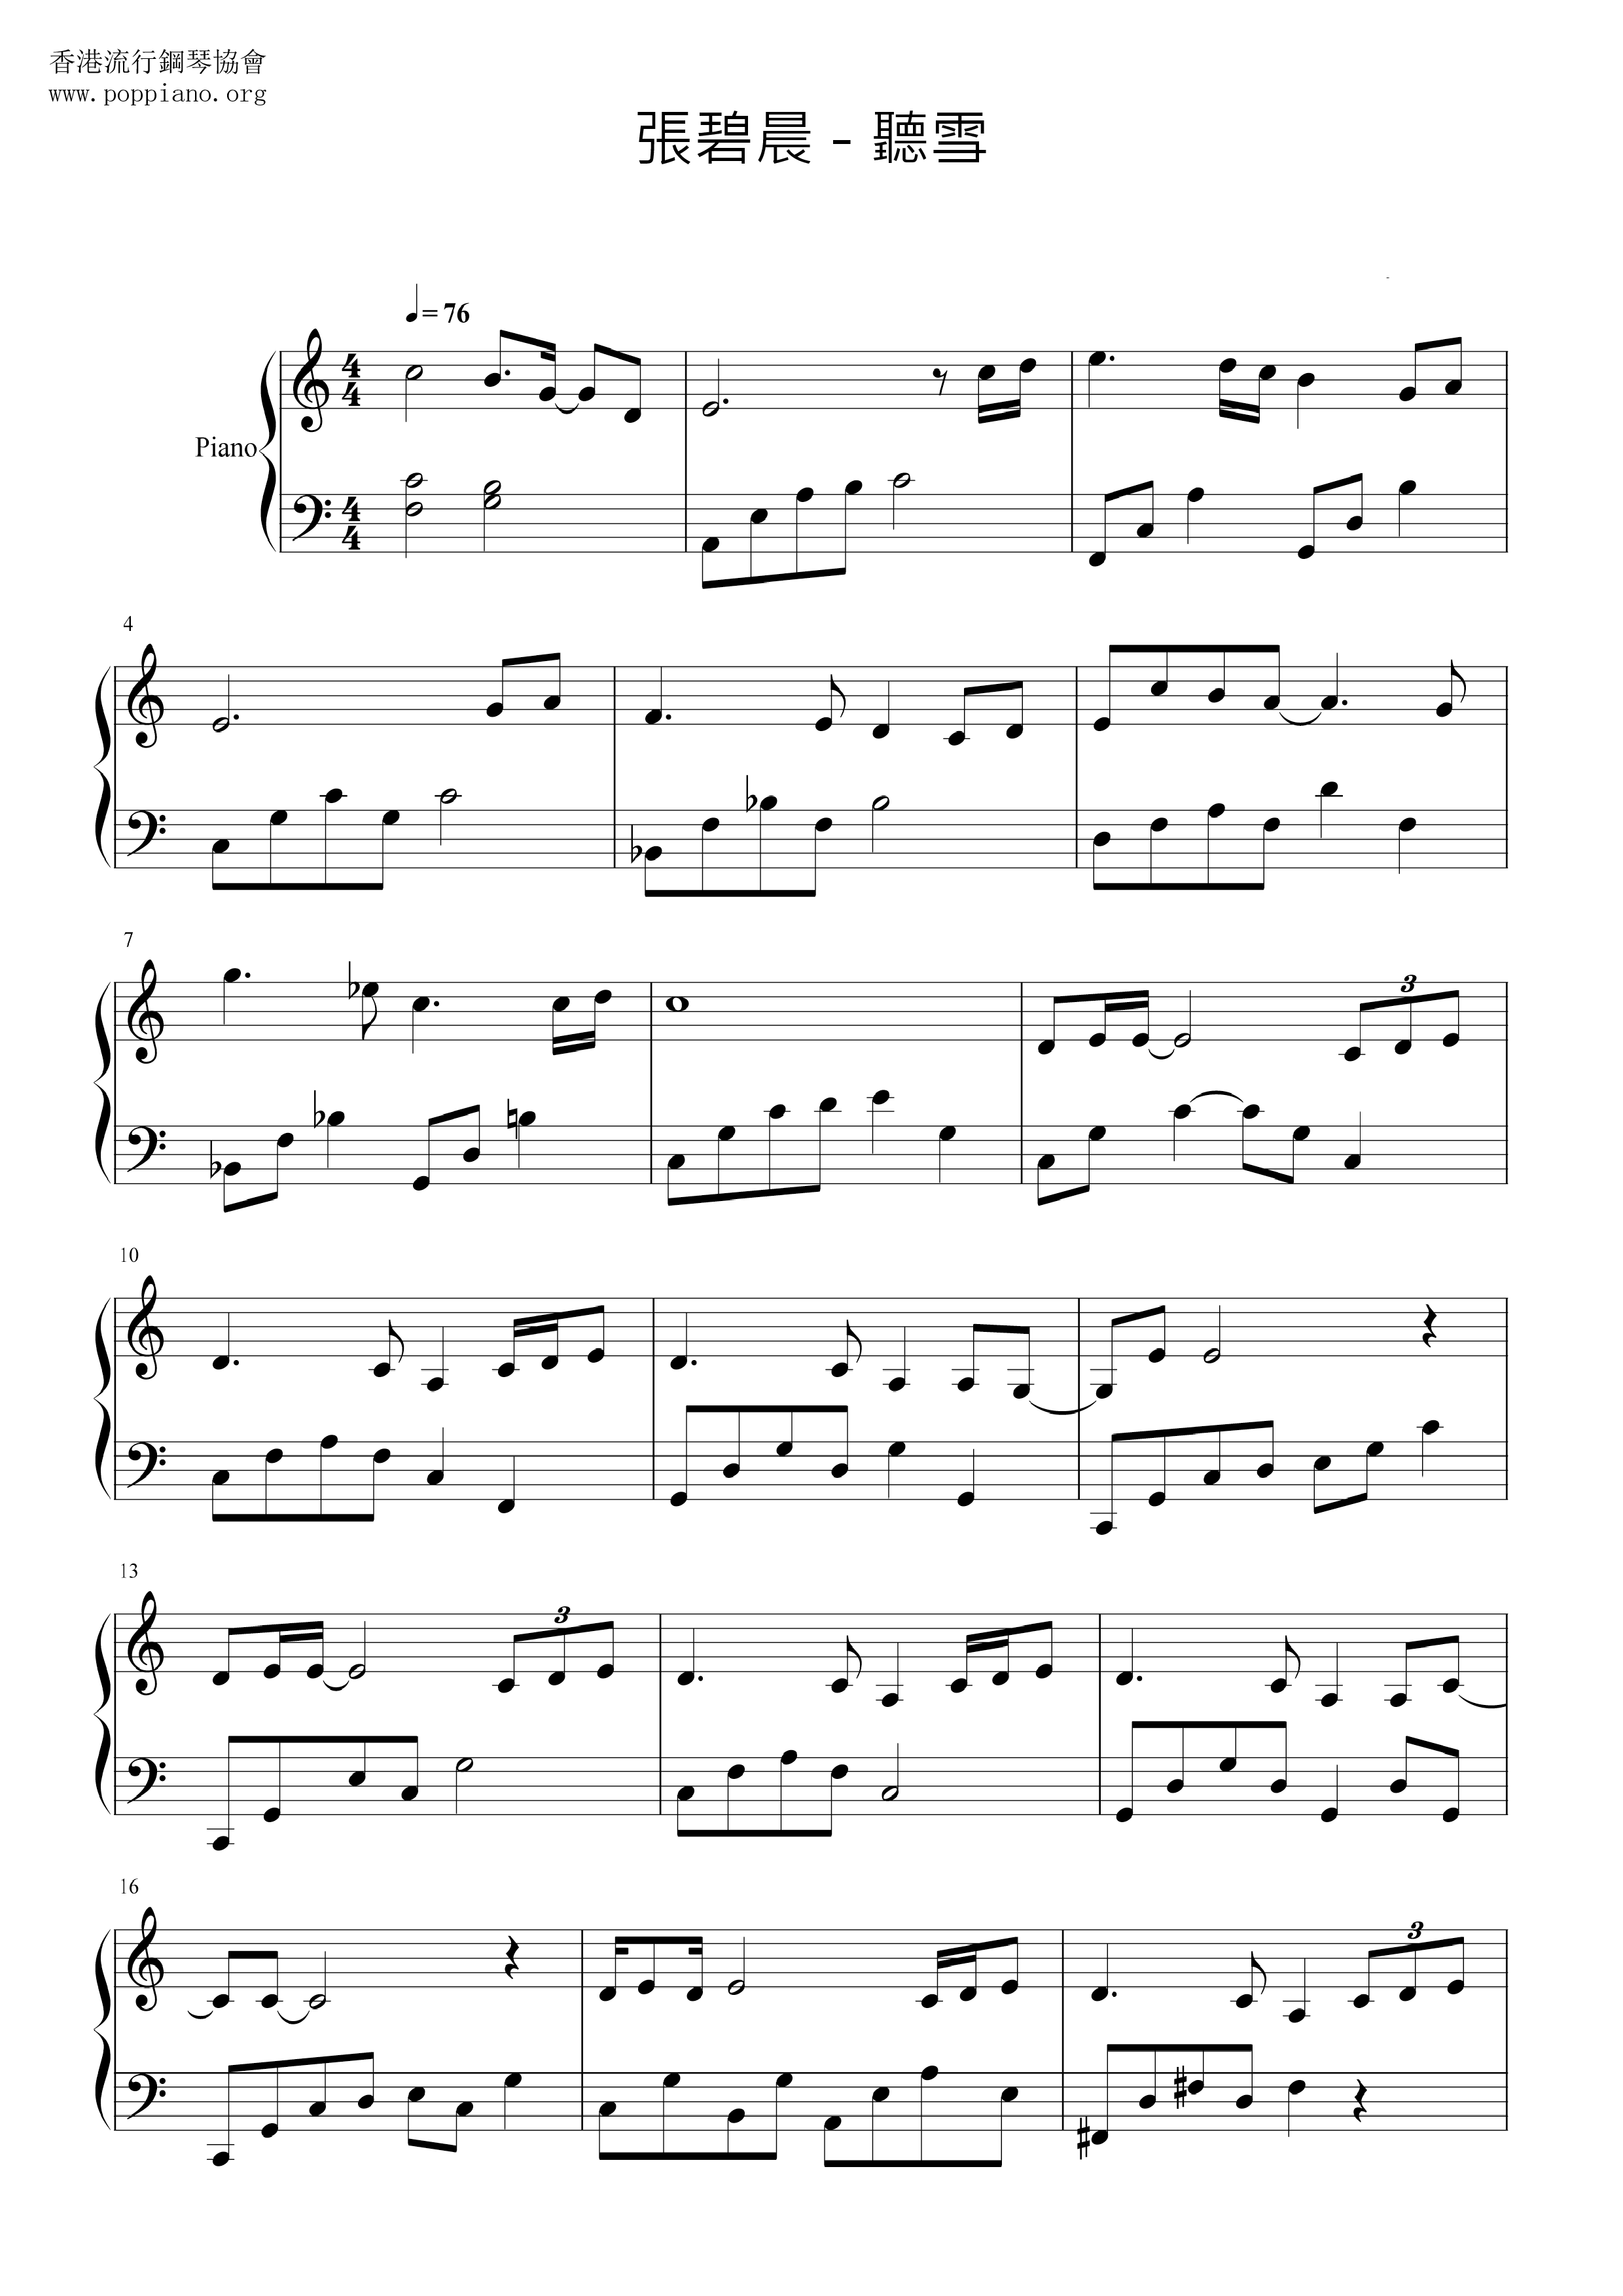 Tingxue Score